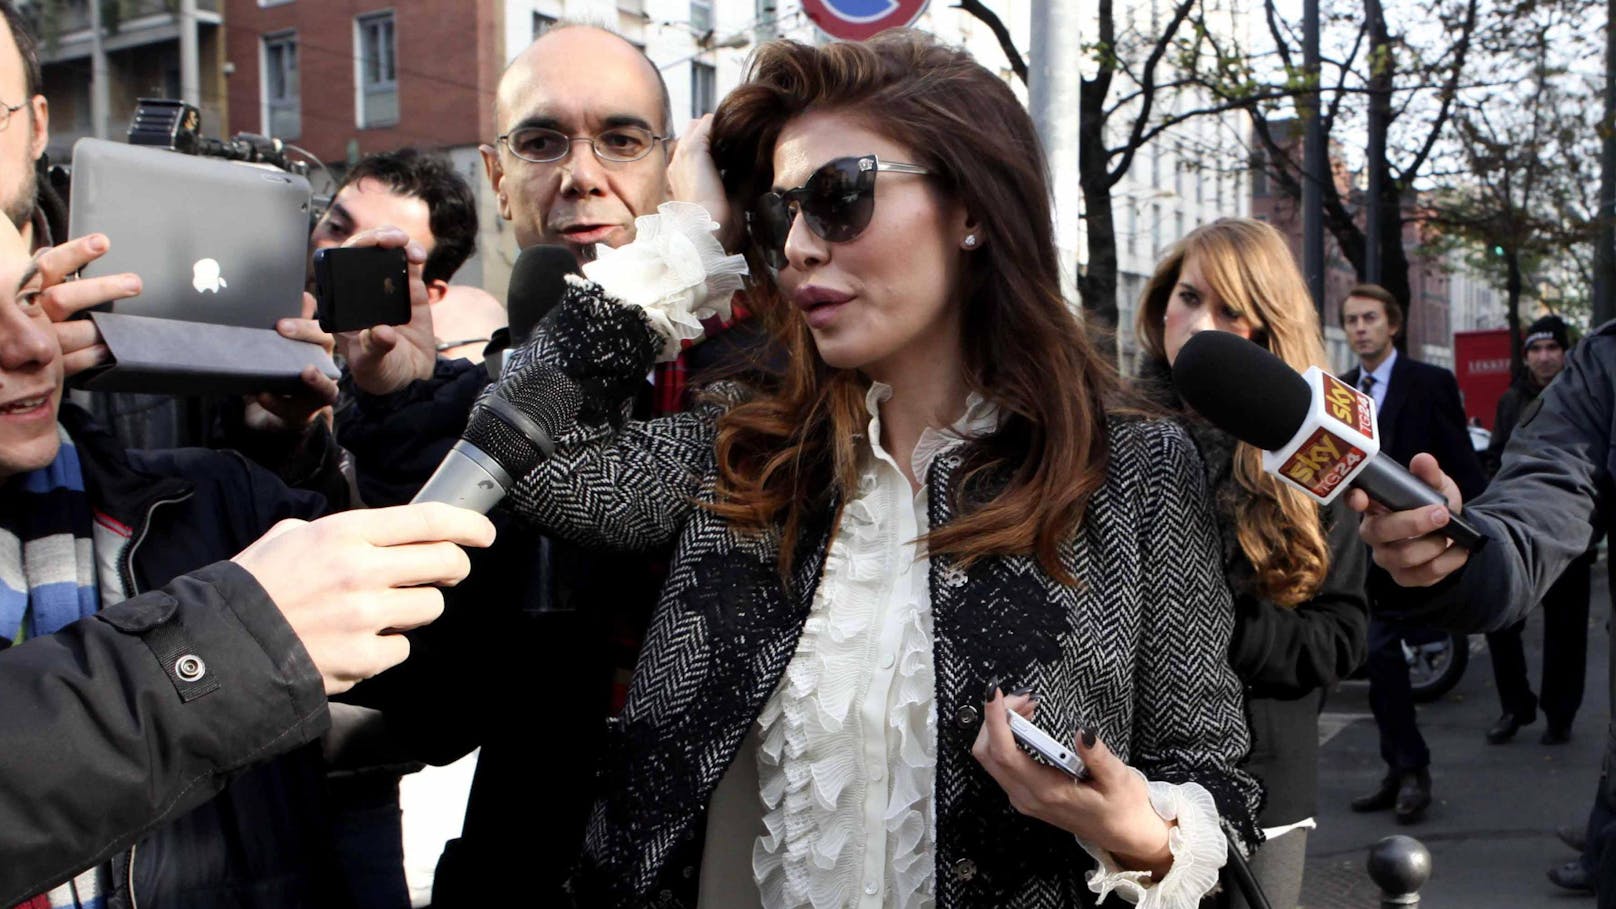 Alessandra Sorcinelli war eine der Zeuginnen in der "Ruby"-Affäre um Silvio Berlusconi wegen des Verdachts auf Förderung der Prostitution Minderjähriger.